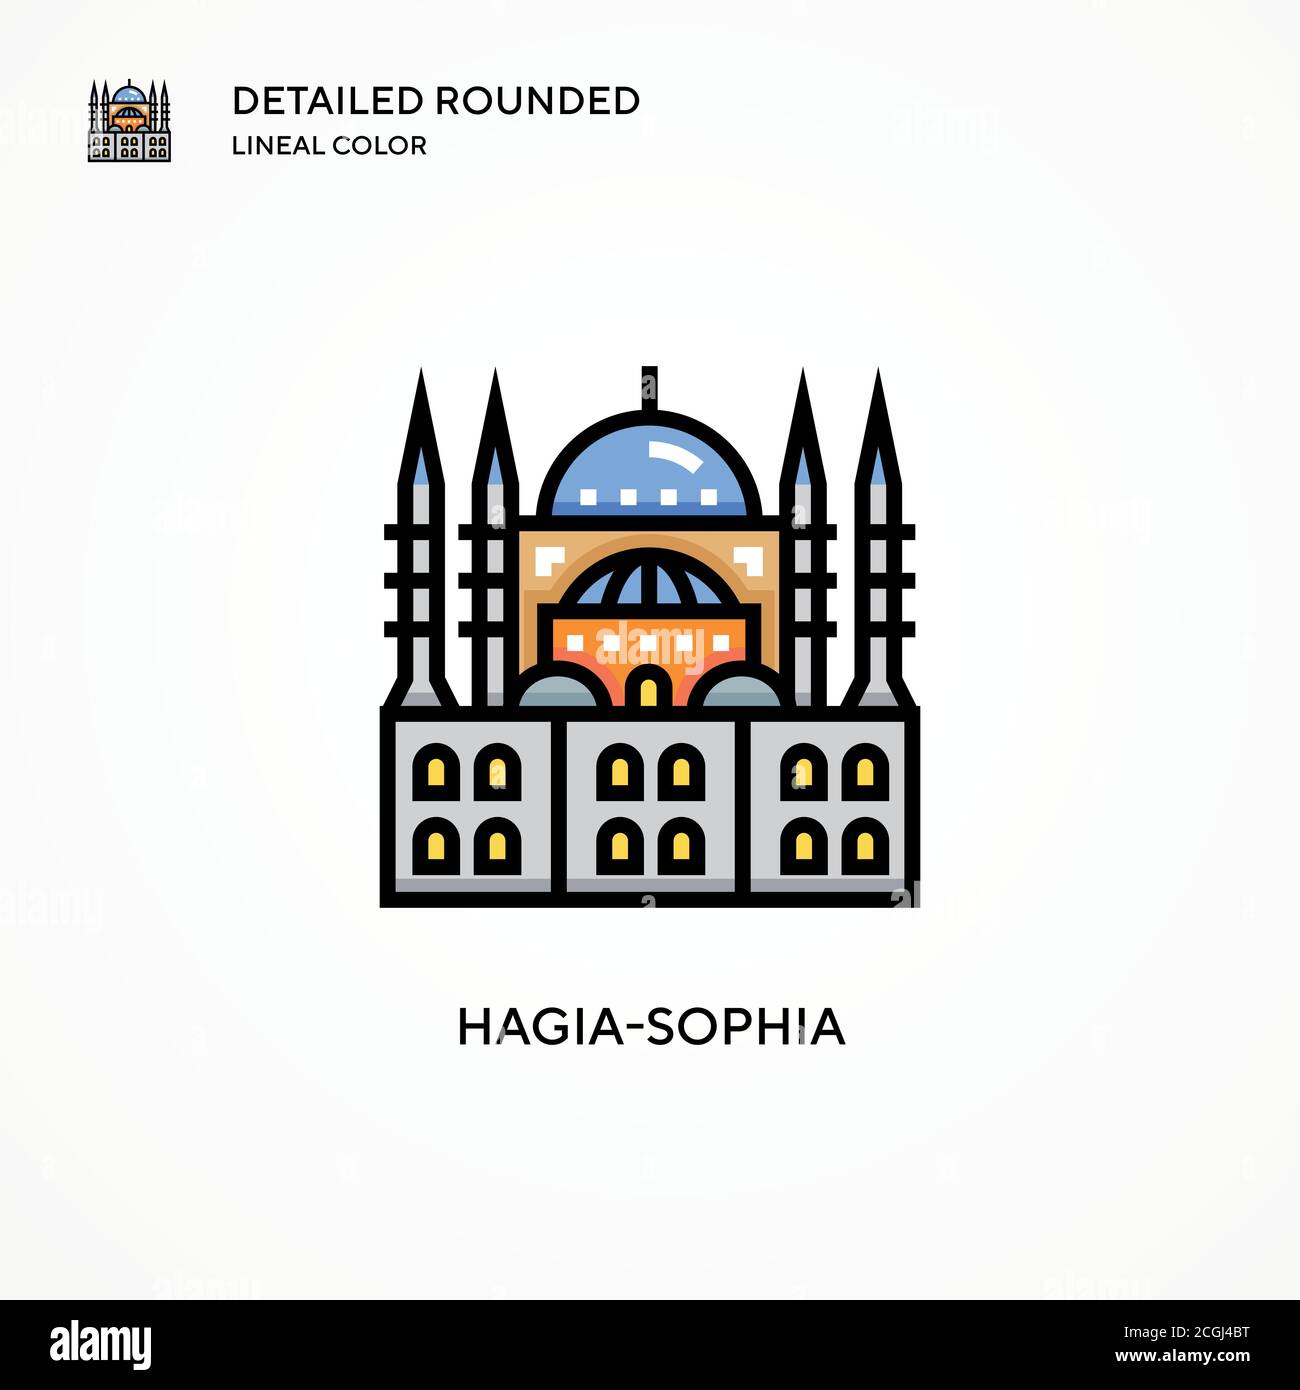 Icona del vettore Hagia-sophia. Concetti moderni di illustrazione vettoriale. Facile da modificare e personalizzare. Illustrazione Vettoriale